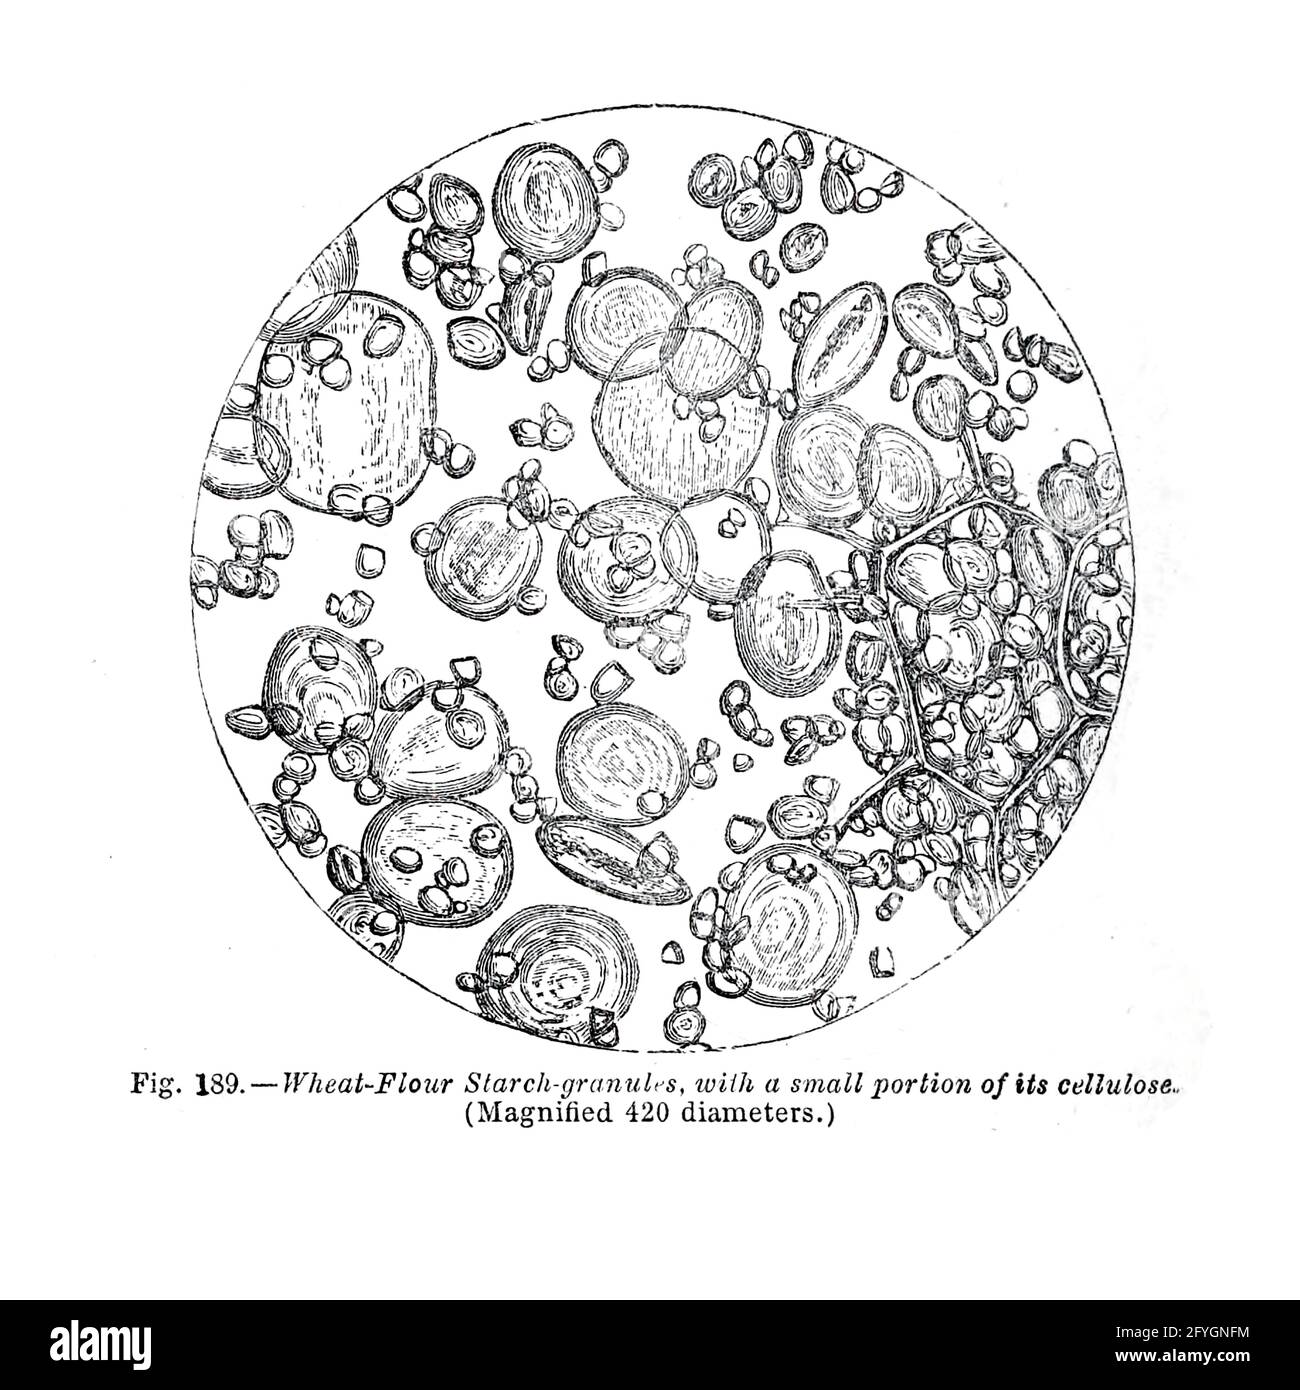 Cellule sotto microscopio dal libro ' The microscopio : its history, construction, and application ' di Hogg, Jabez, 1817-1899 pubblicato a Londra da G. Routledge nel 1869 con illustrazioni di TUFFEN WEST Foto Stock